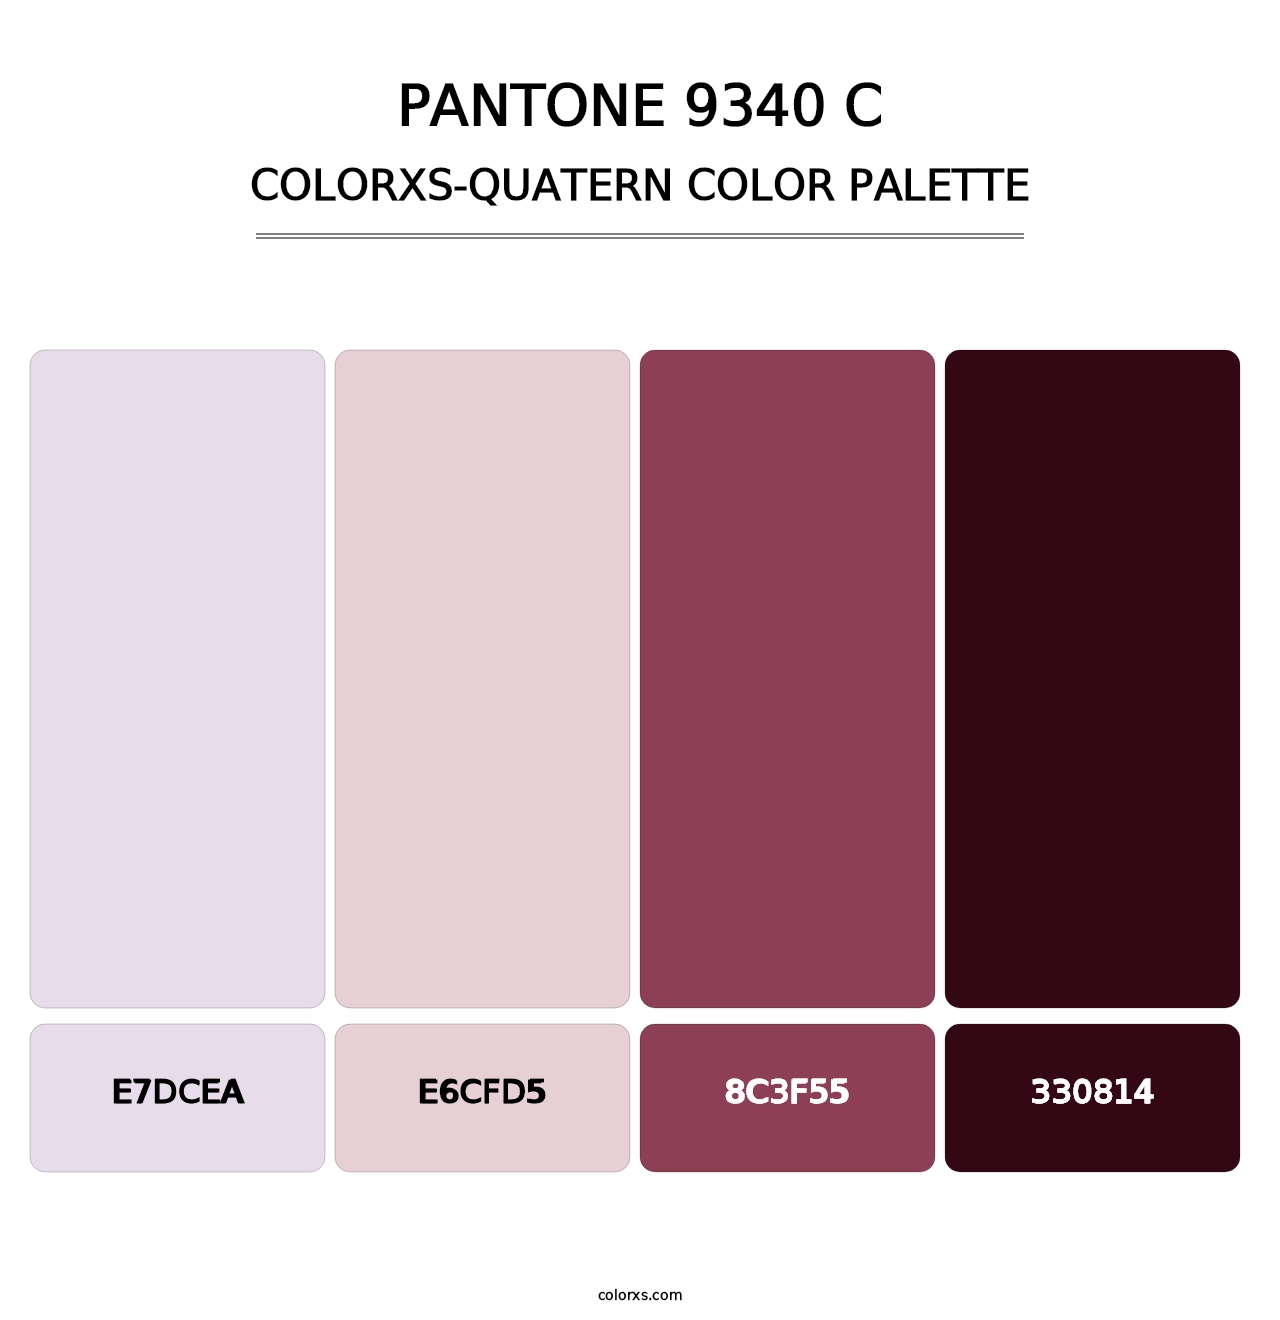 PANTONE 9340 C - Colorxs Quatern Palette